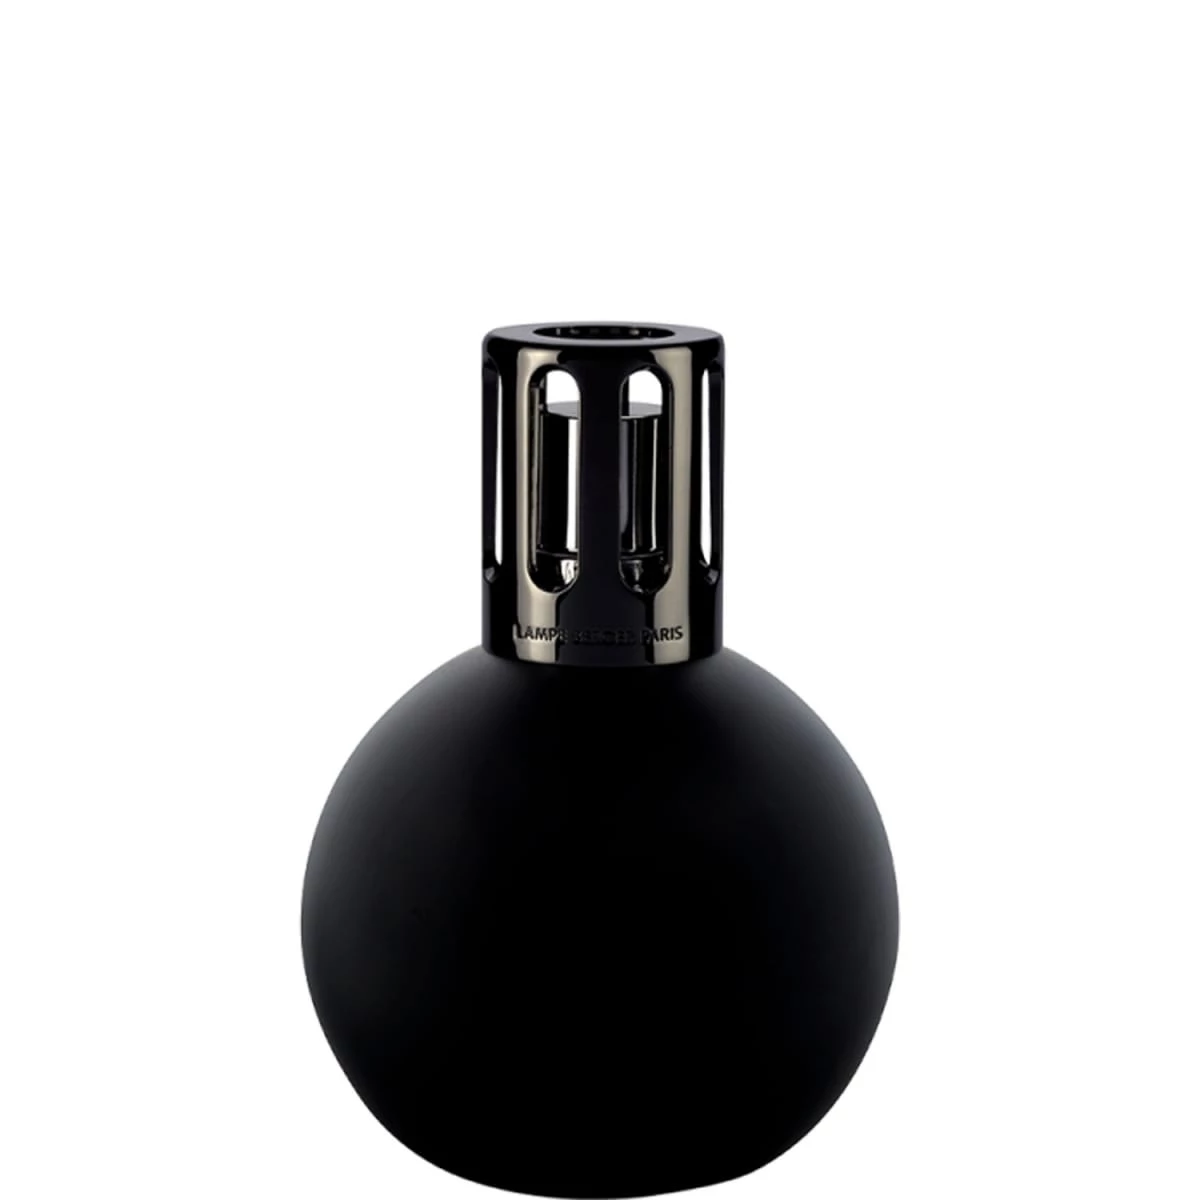 MAISON BERGER  Coffret Lampe Berger Spirale Noire & parfum